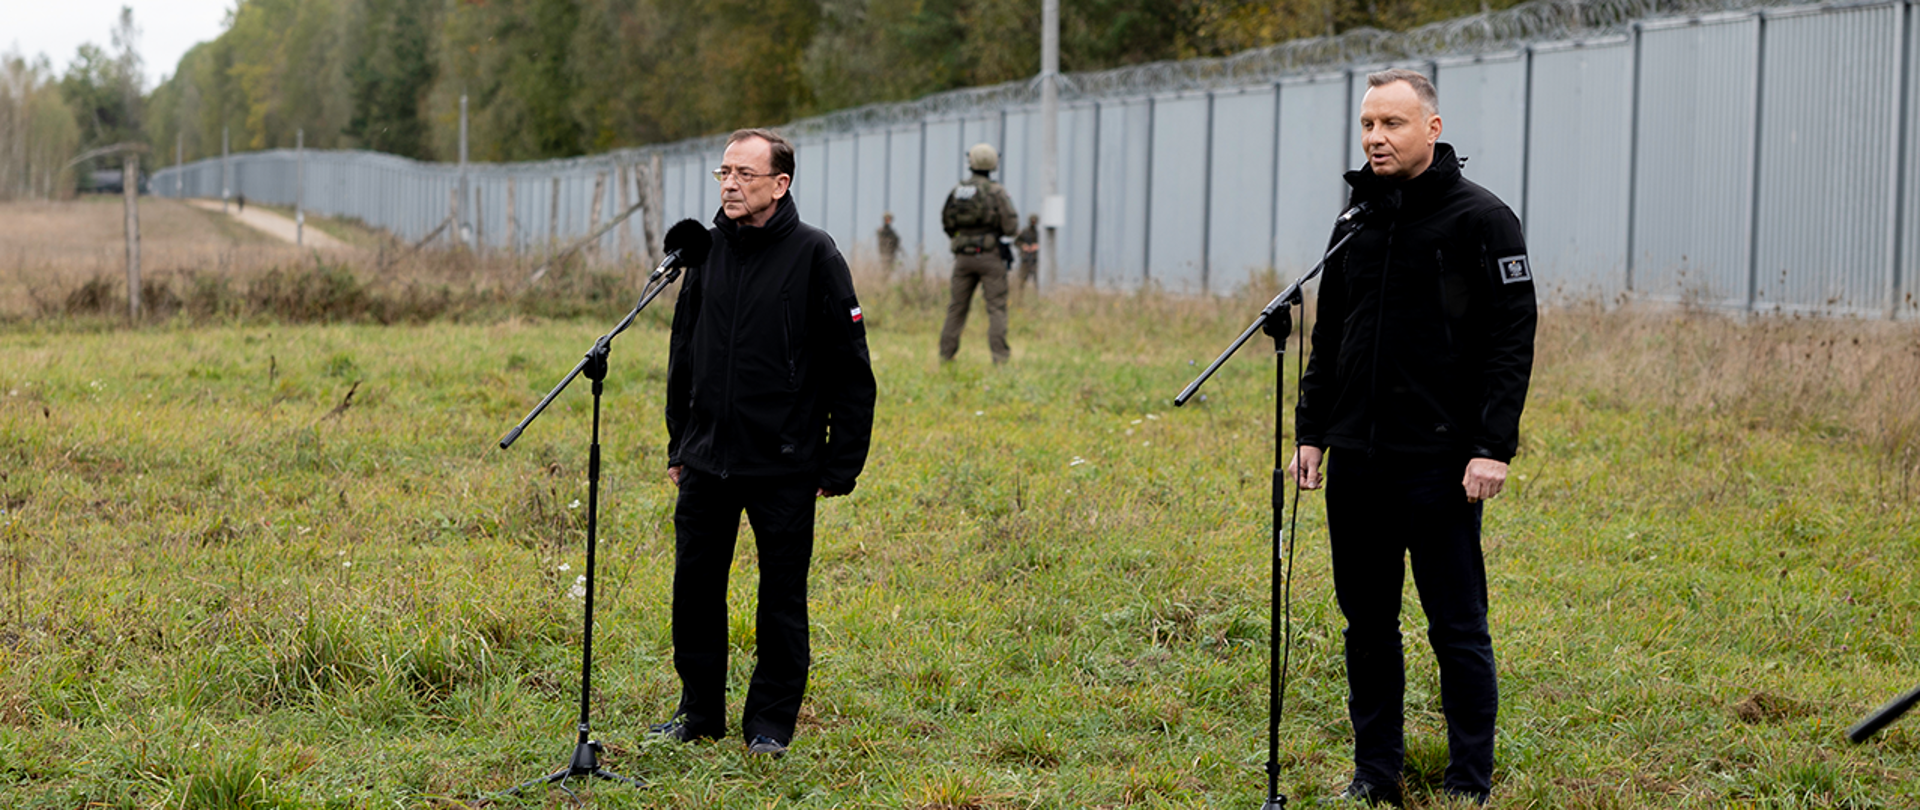 Spotkanie z funkcjonariuszami Straży Granicznej, Policji i żołnierzami na granicy polsko-białoruskiej 